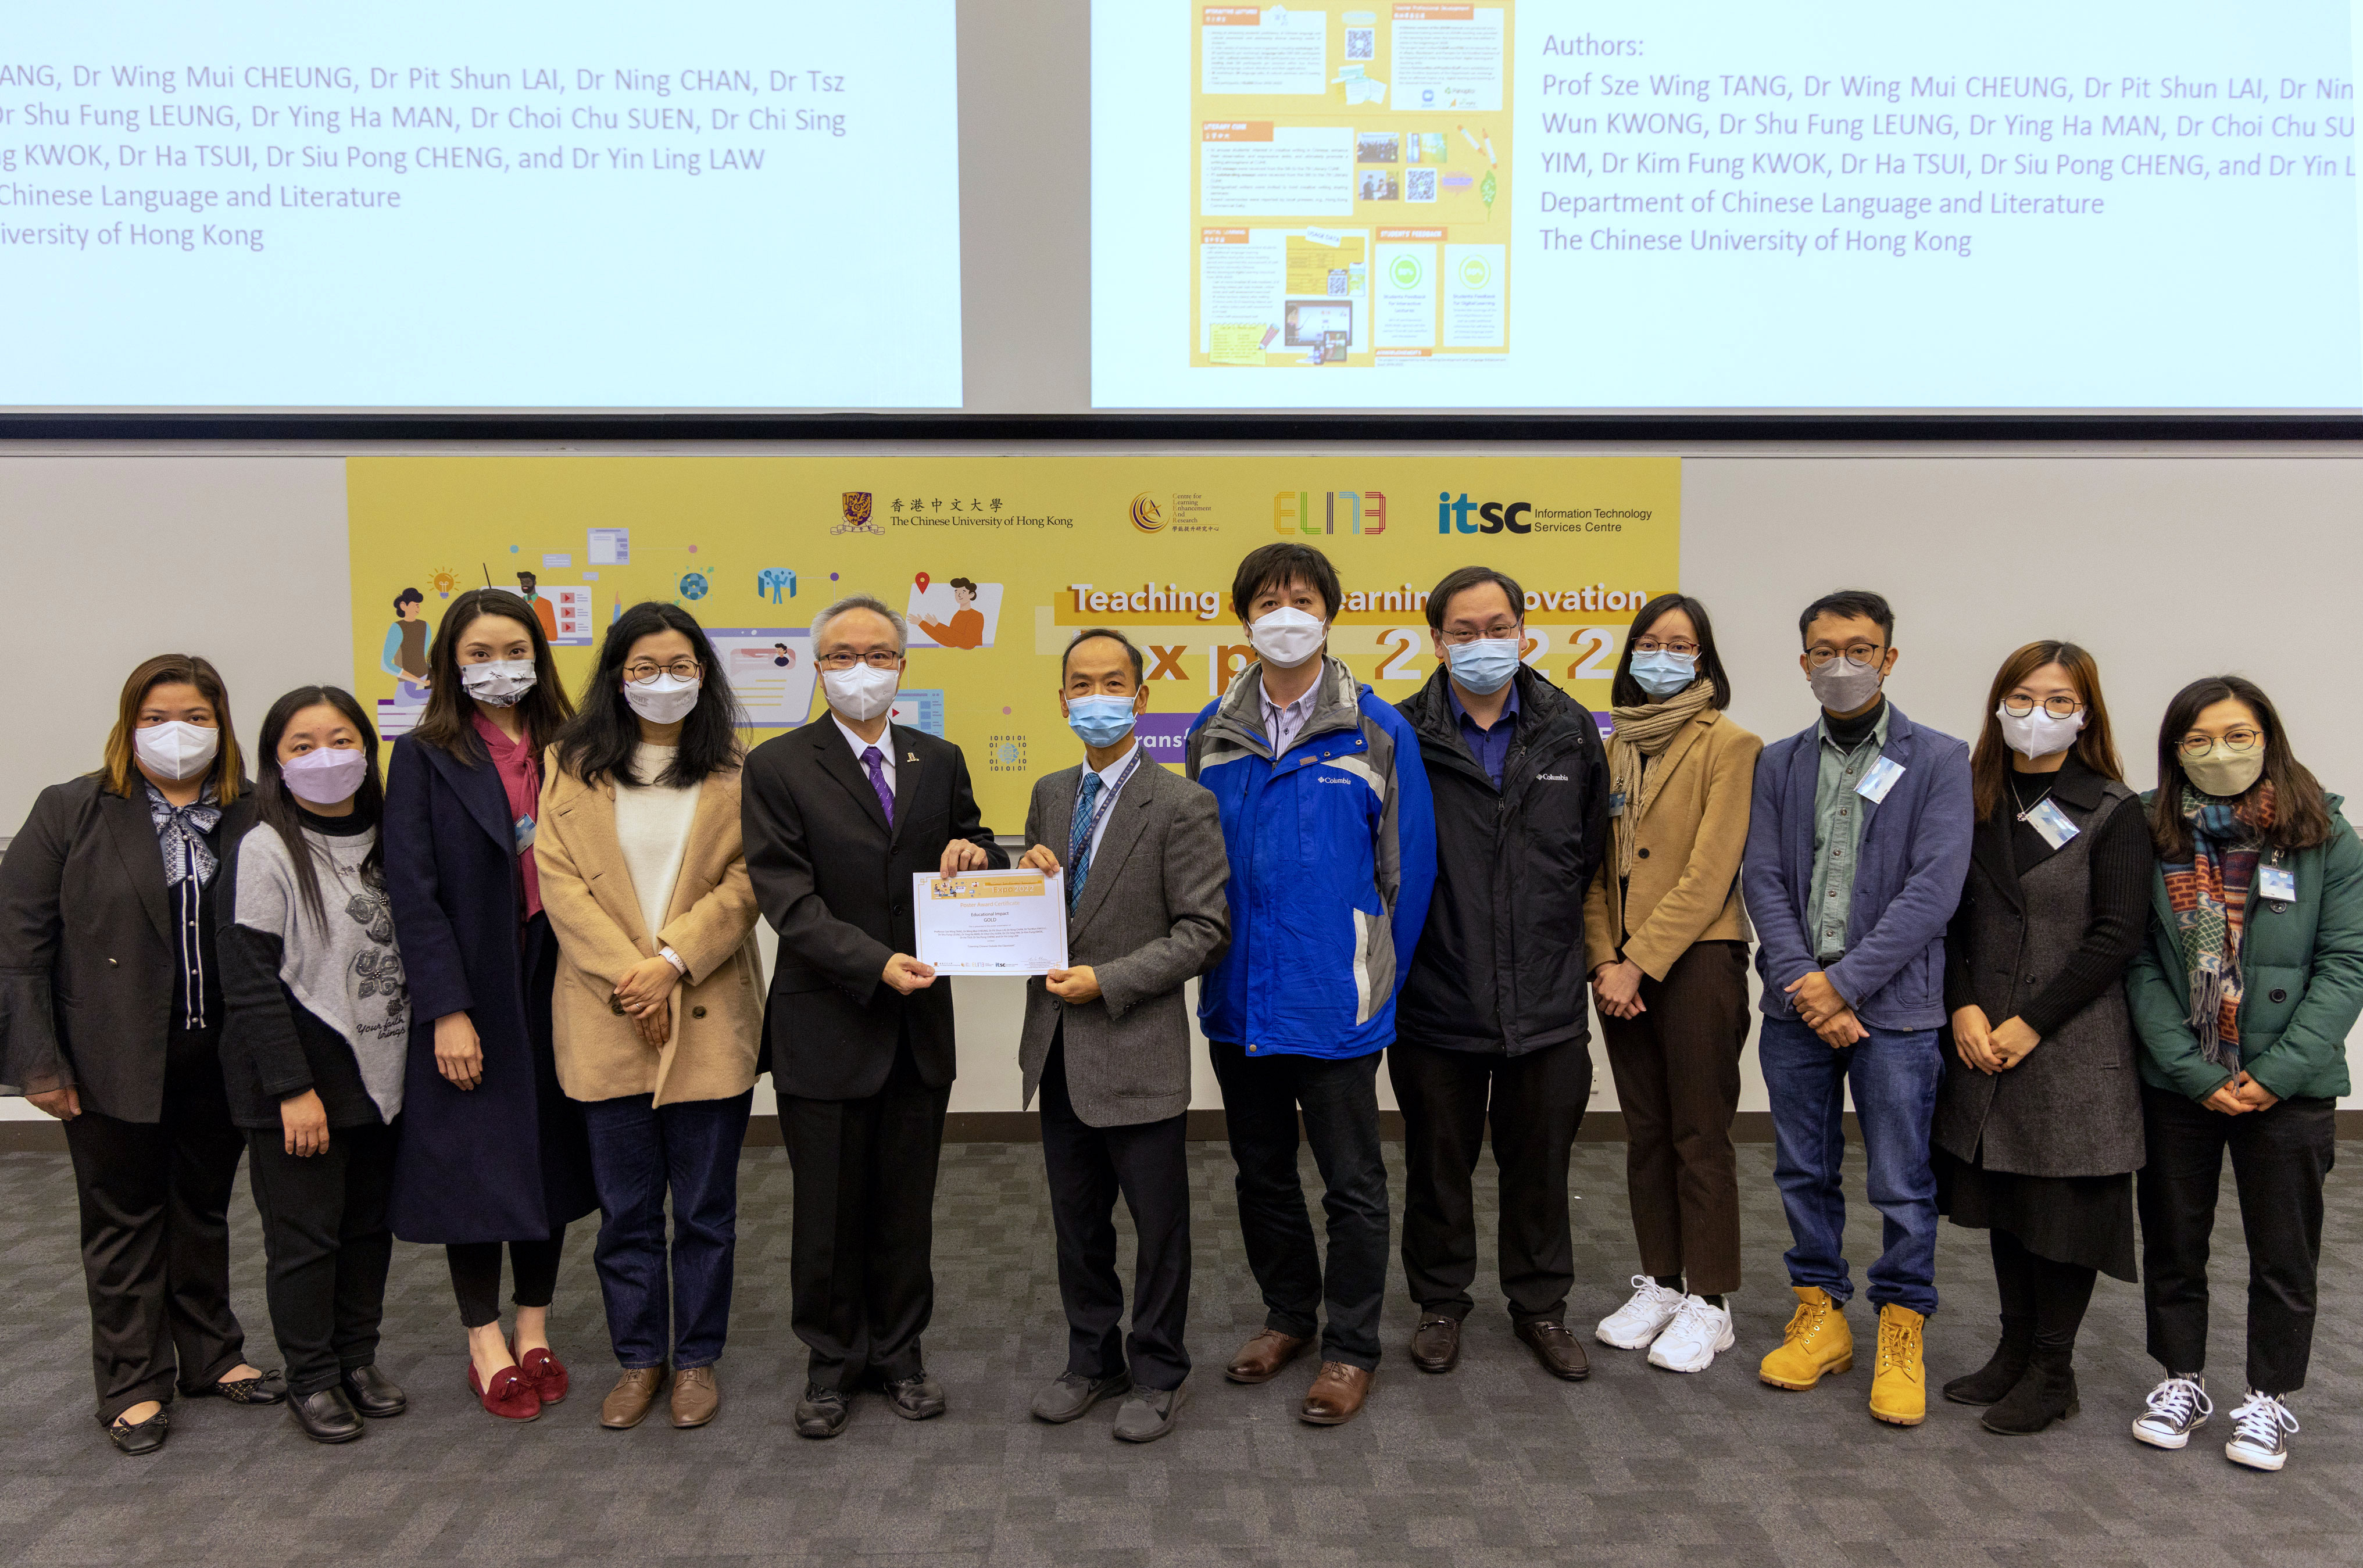 「走出課室學中文」團隊獲頒教育影響獎金獎